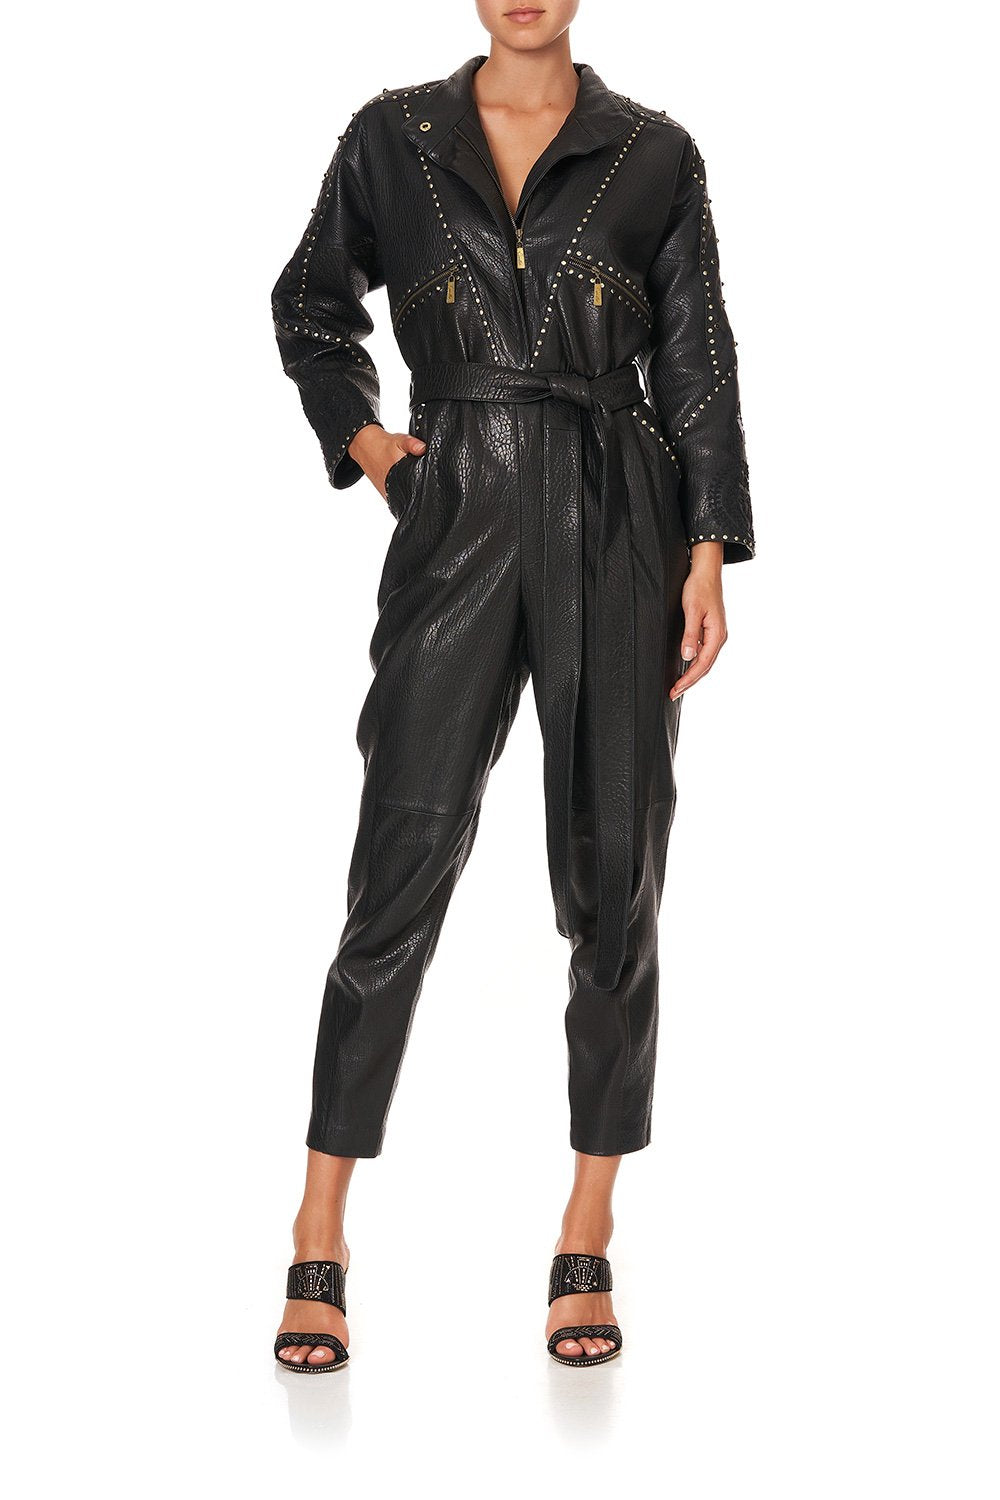  Women's Faux Leather Jumpsuit Long Sleeve Front Zipper